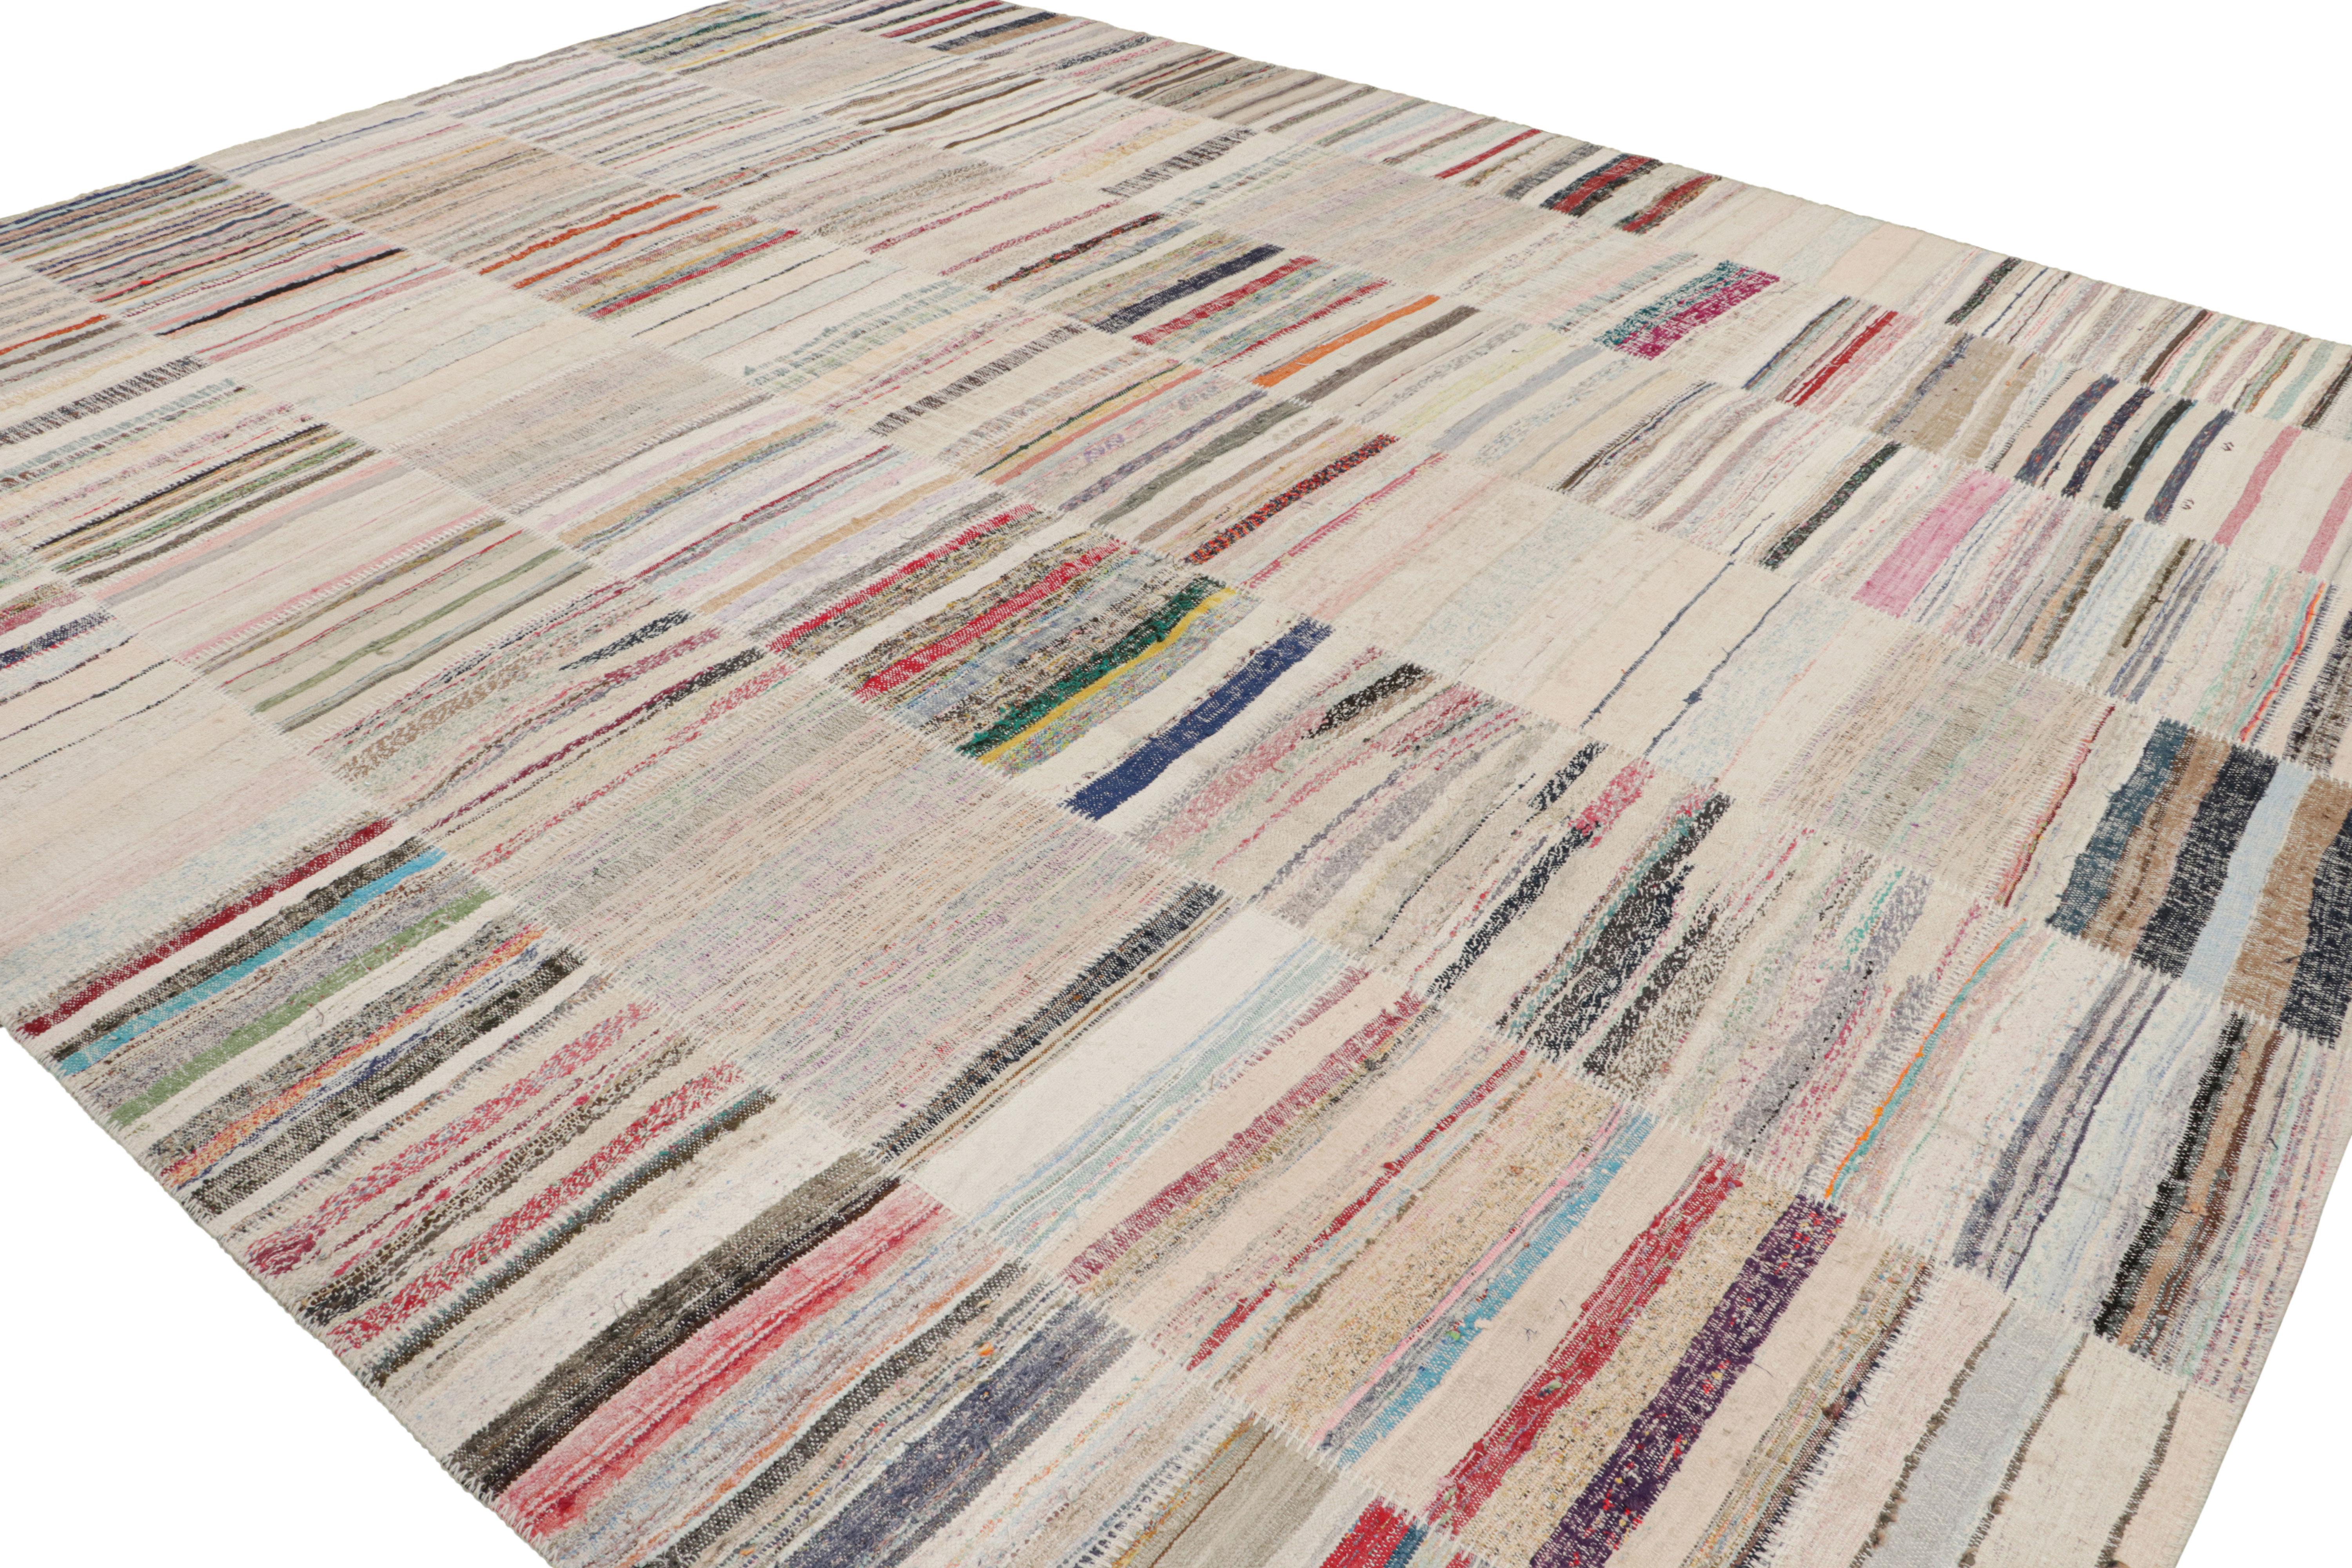 Dieser moderne Kilim-Teppich aus der Patchwork-Kilim-Kollektion von Rug & Kilim ist ein handgewebter Flachgewebe-Teppich aus Wolle mit Vintage-Garnen. Er ist inspiriert von Kilim-Teppichen aus der Mitte des letzten Jahrhunderts und zeigt ein